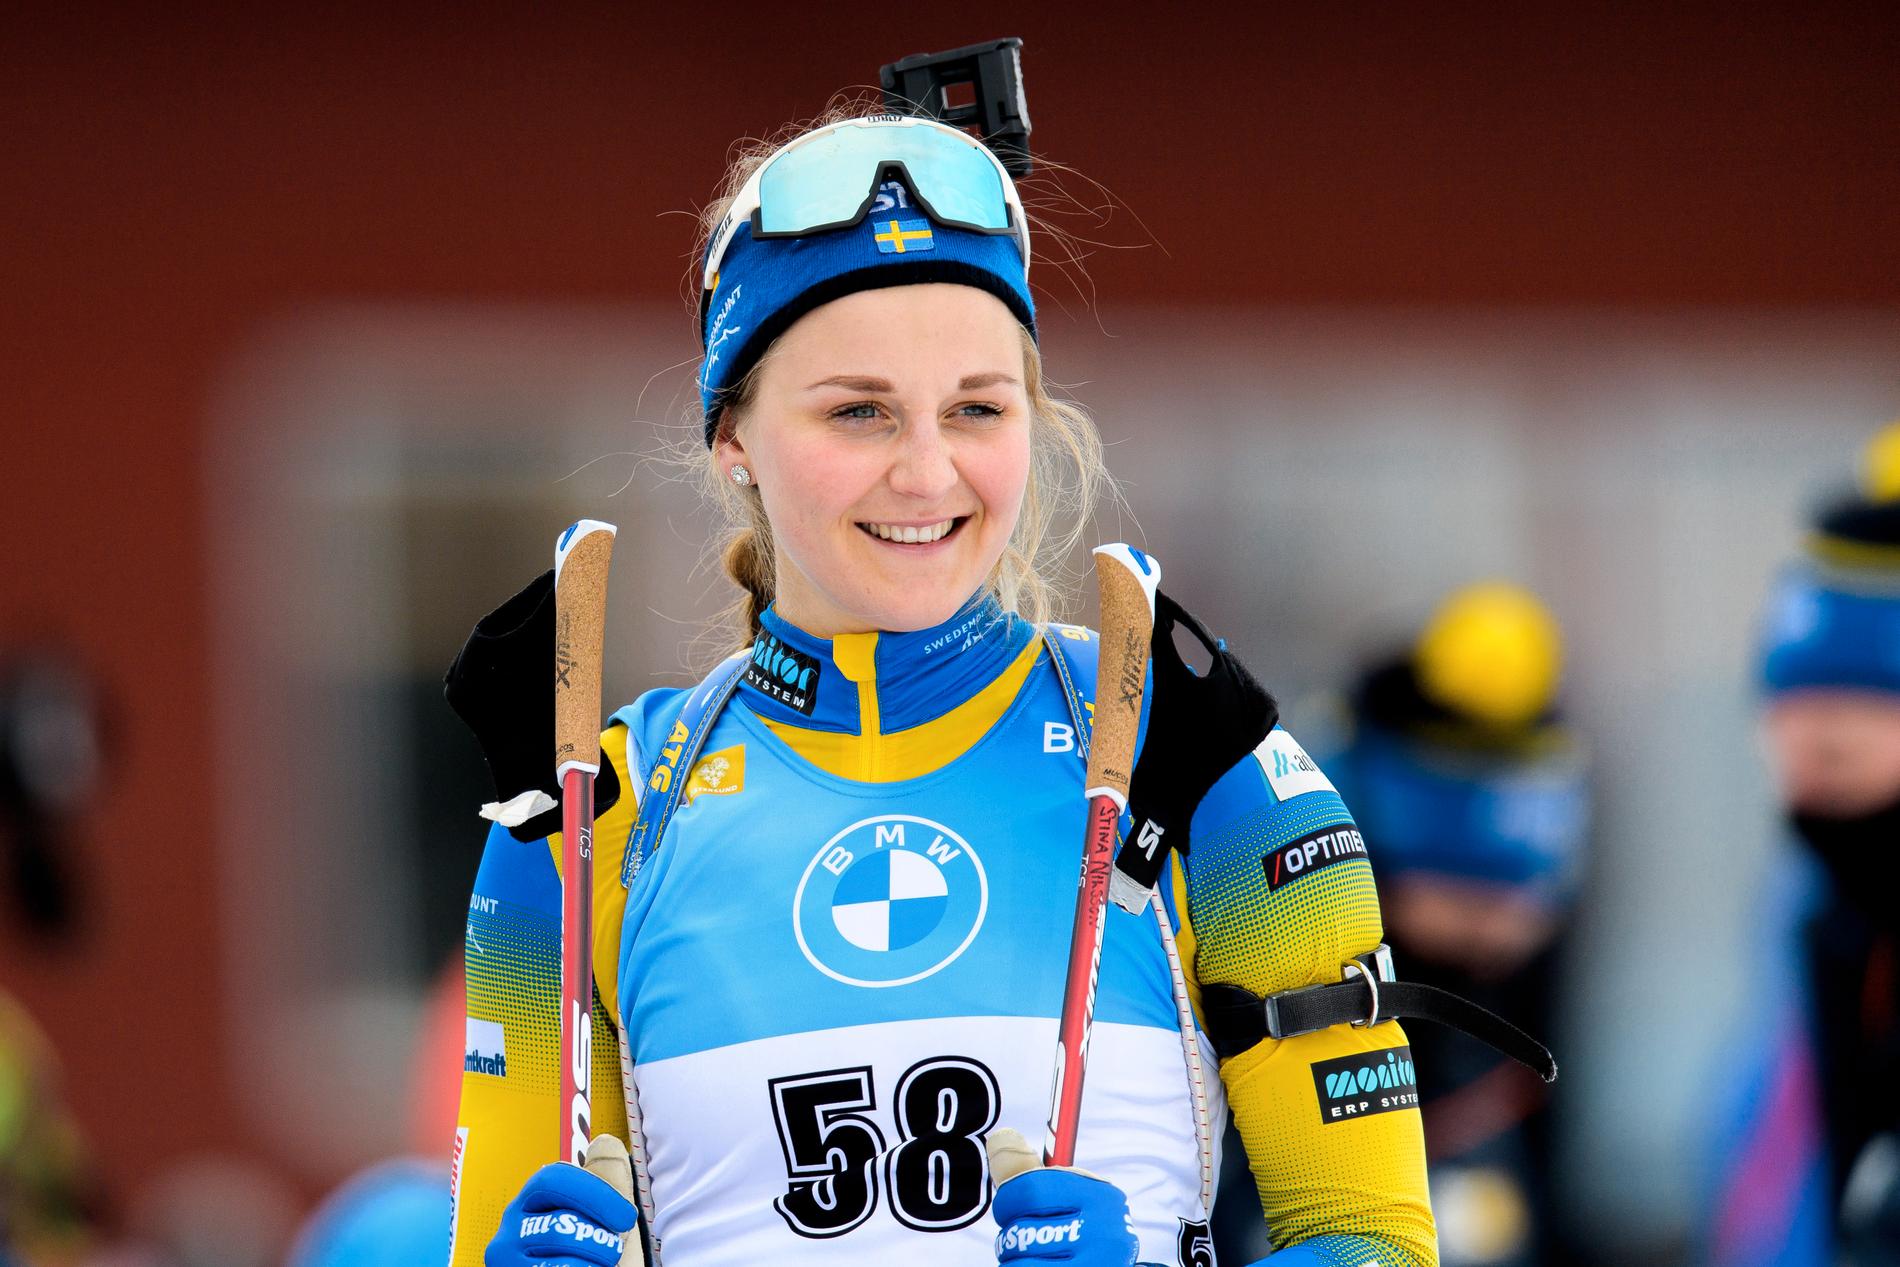 Stina Nilsson sköt fullt i sitt allra första skytte i världscupen. 